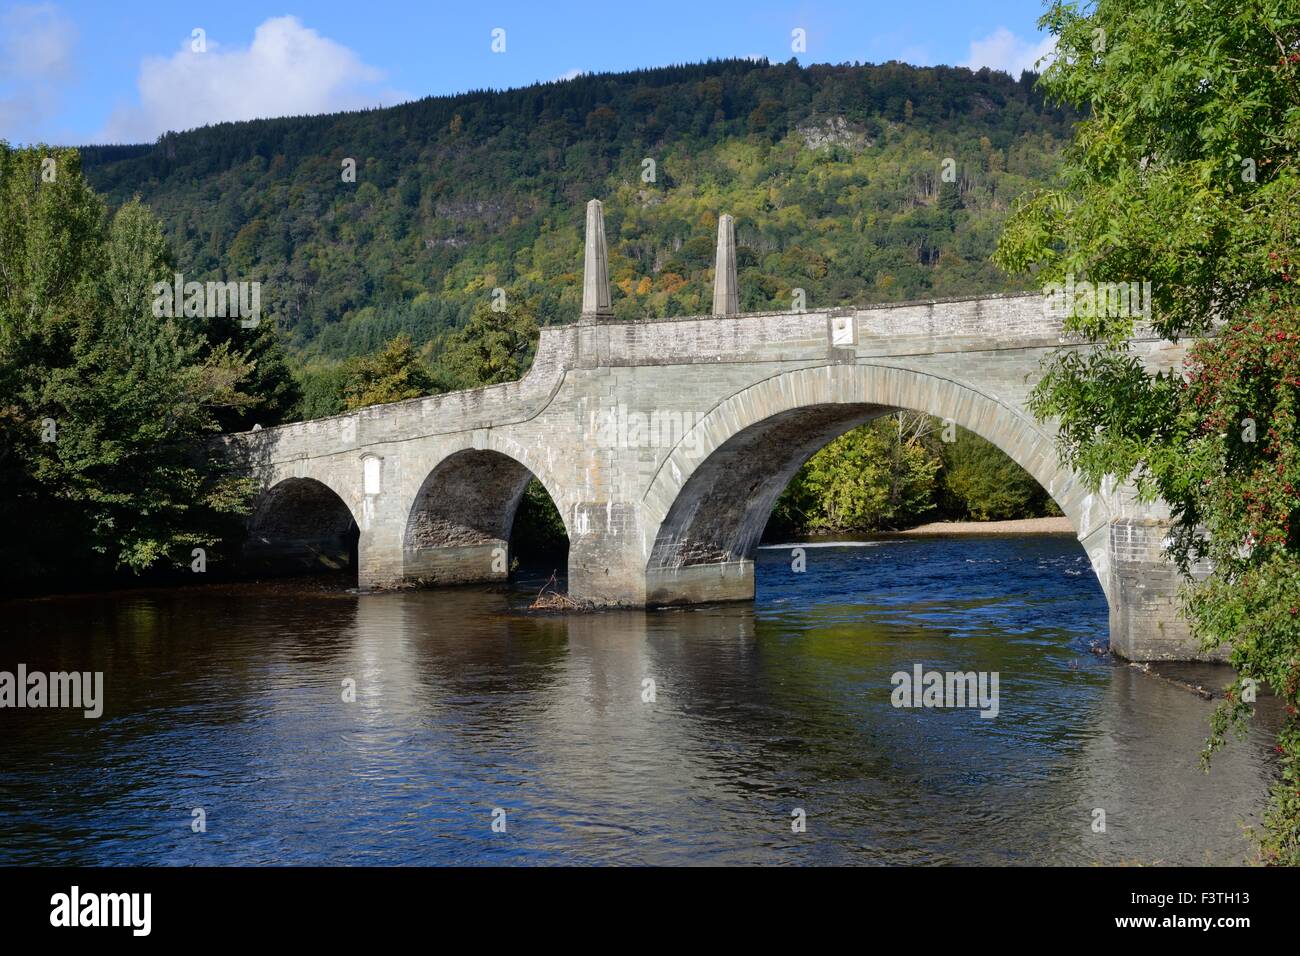 Le pont sur la rivière Tay à Aberfeldy, Ecosse, Royaume-Uni Banque D'Images